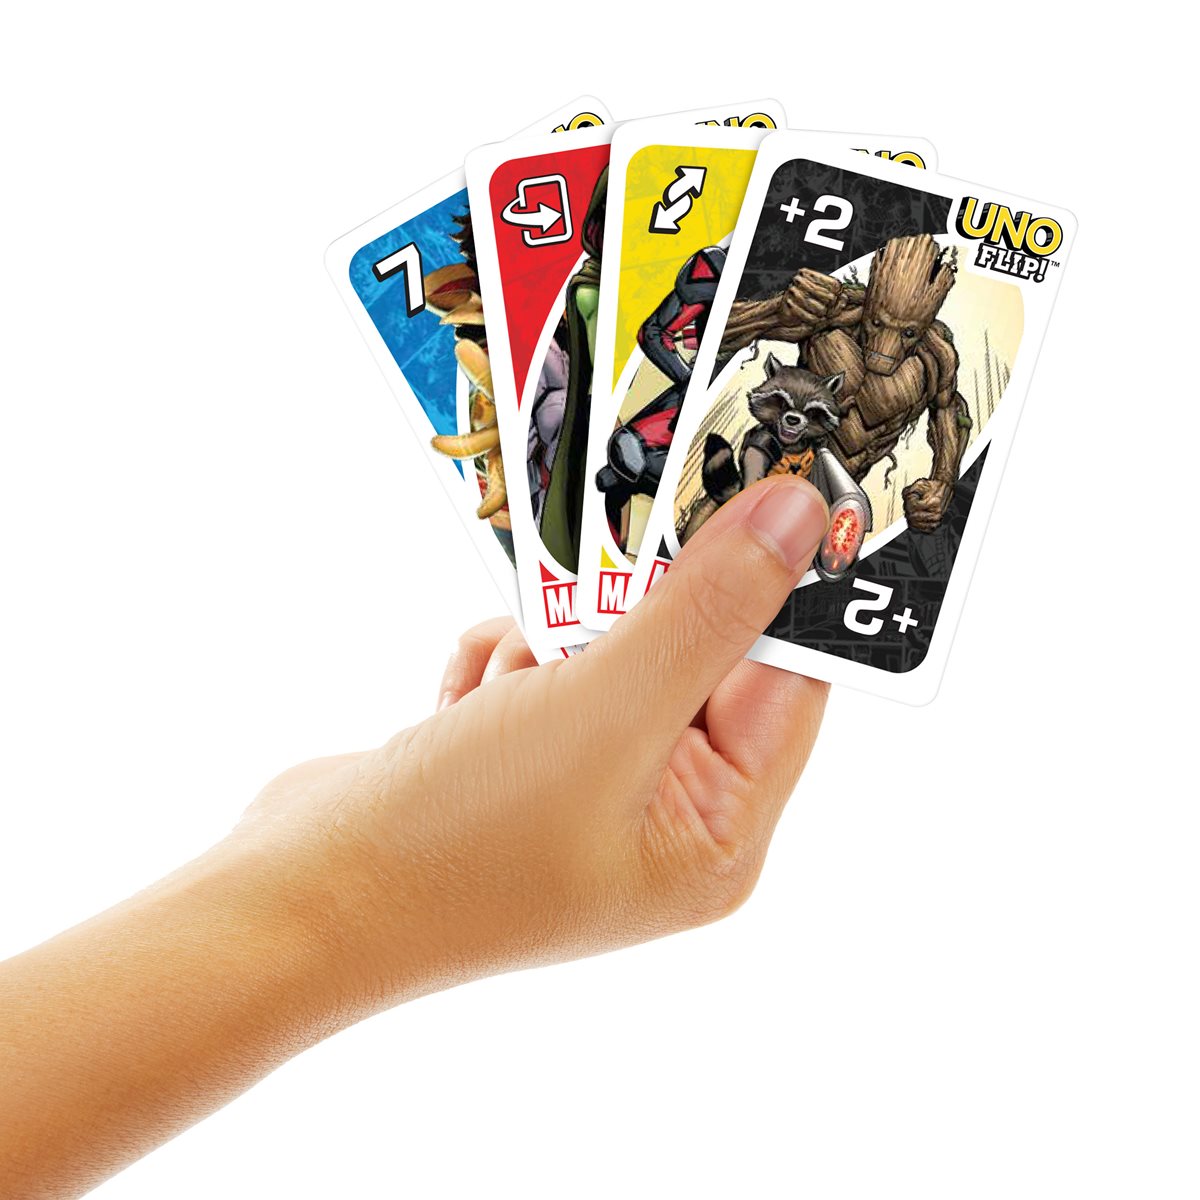 uno flip™ card game, Five Below